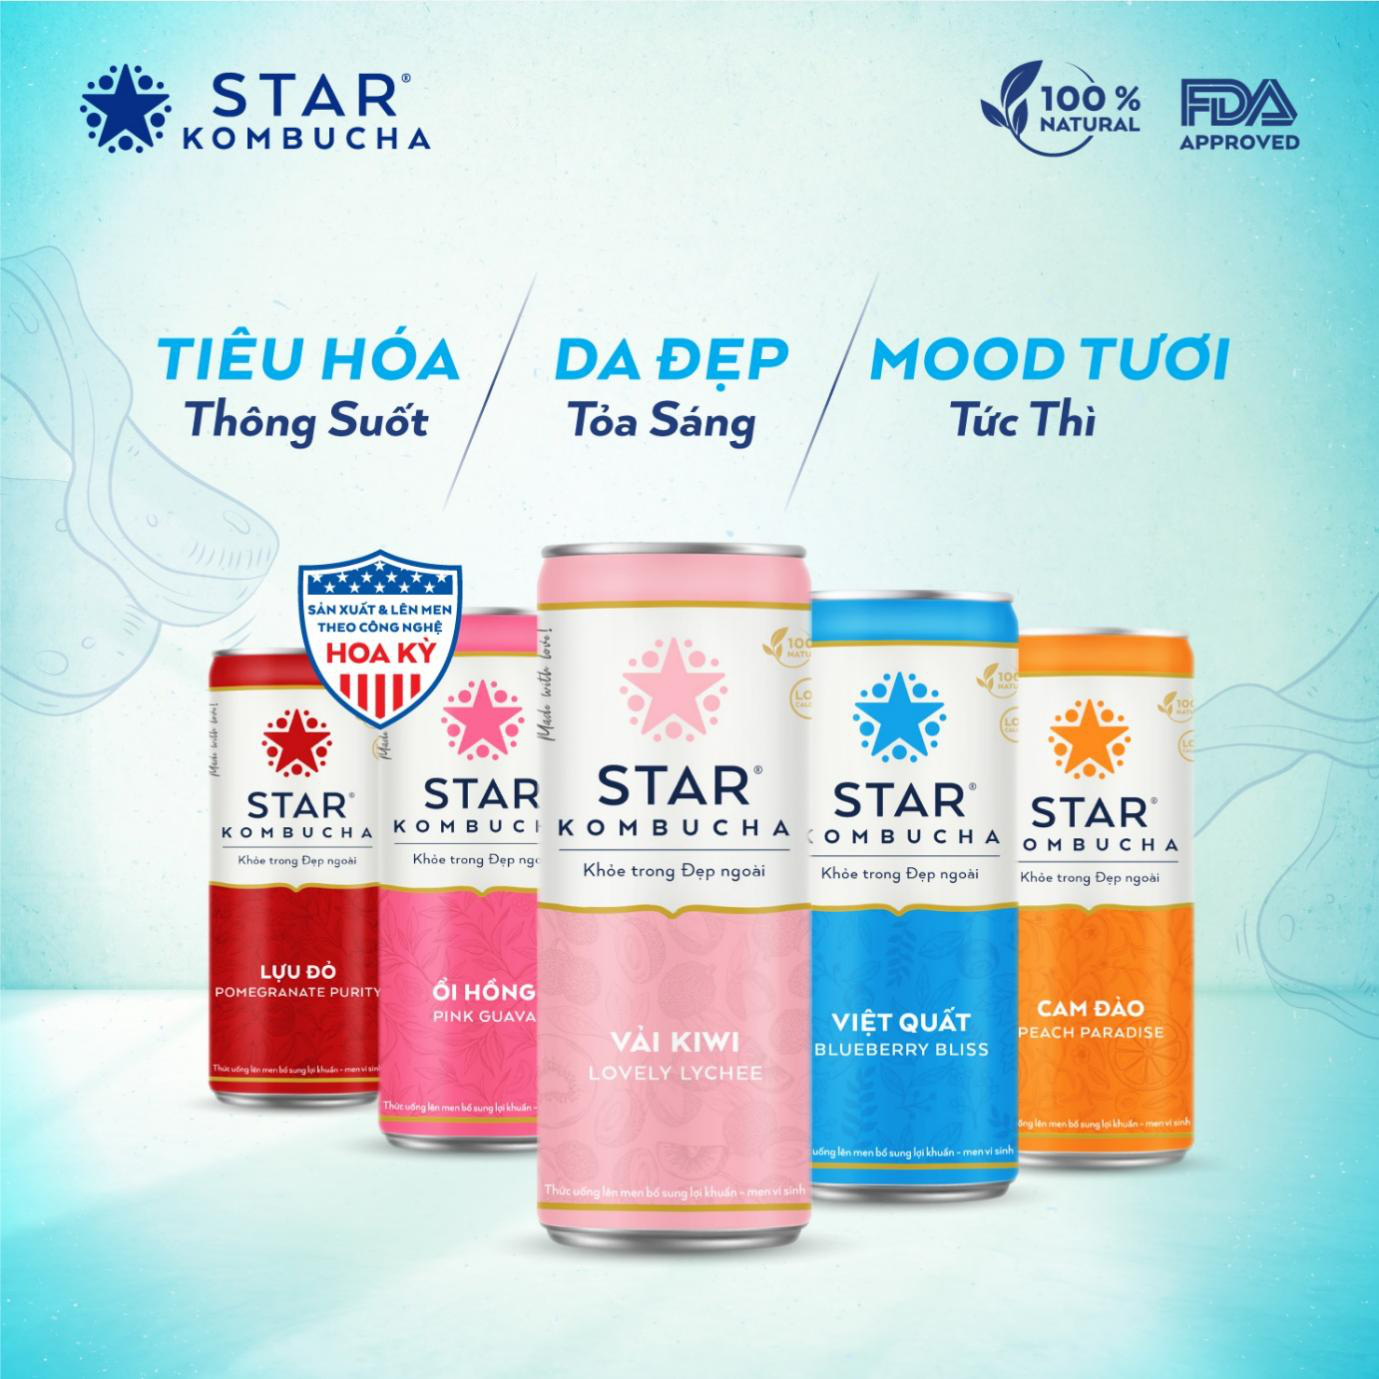 Star Kombucha - trà Kombucha tiên phong của Việt Nam được chứng nhận chất lượng bởiFDA Hoa Kỳ - Ảnh 1.